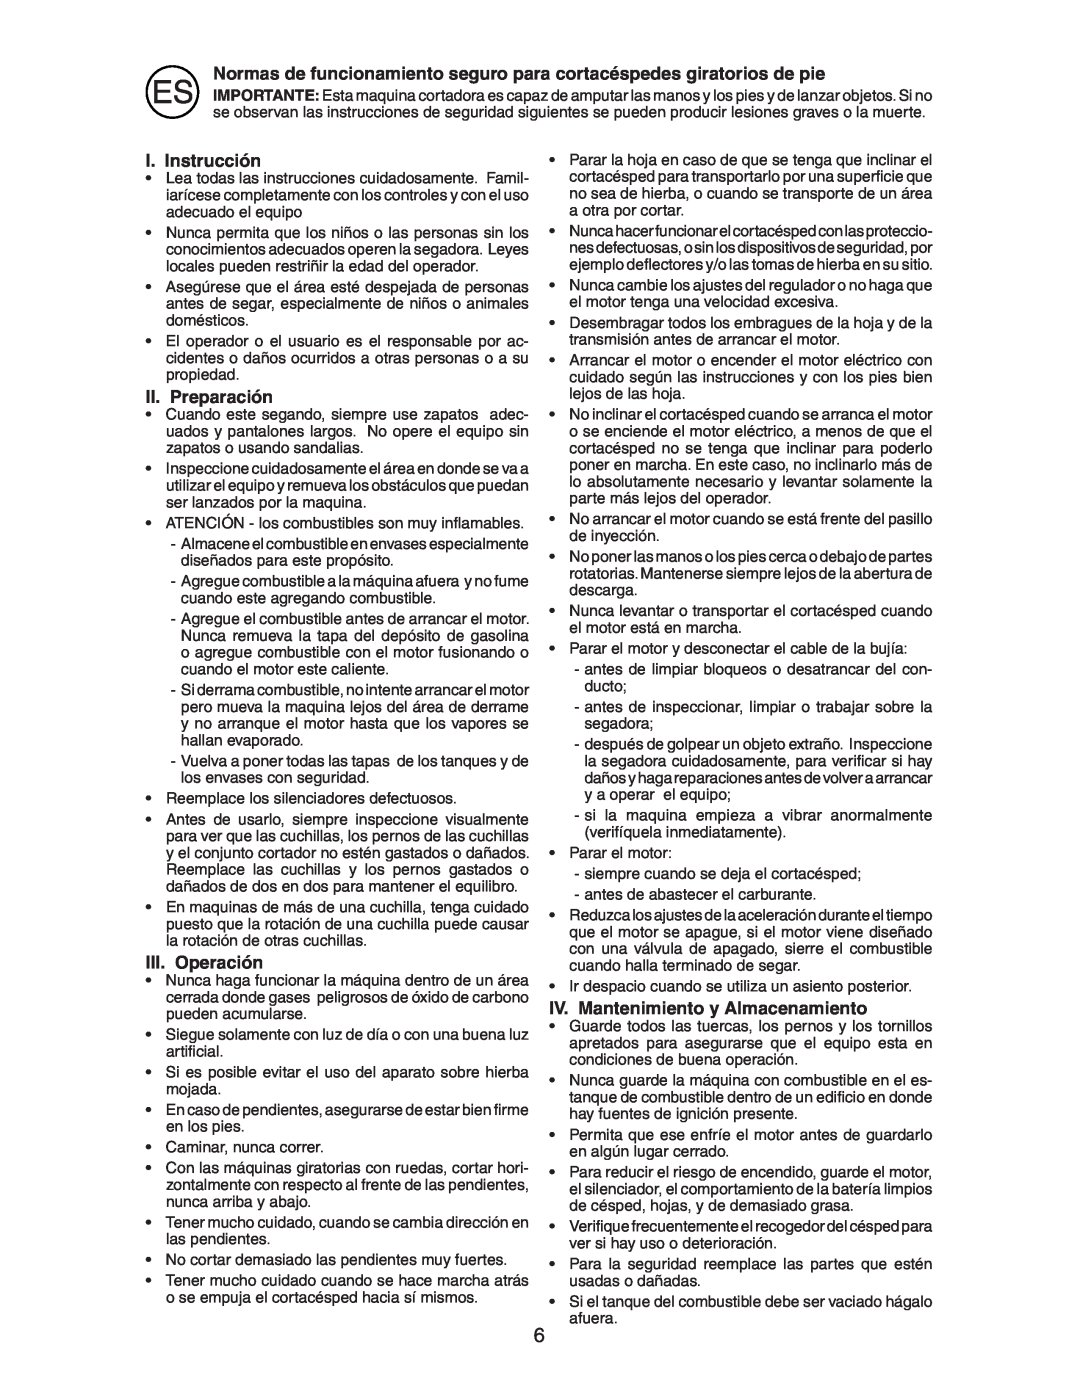 McCulloch M7053D instruction manual I. Instrucción, II. Preparación, III. Operación, IV. Mantenimiento y Almacenamiento 